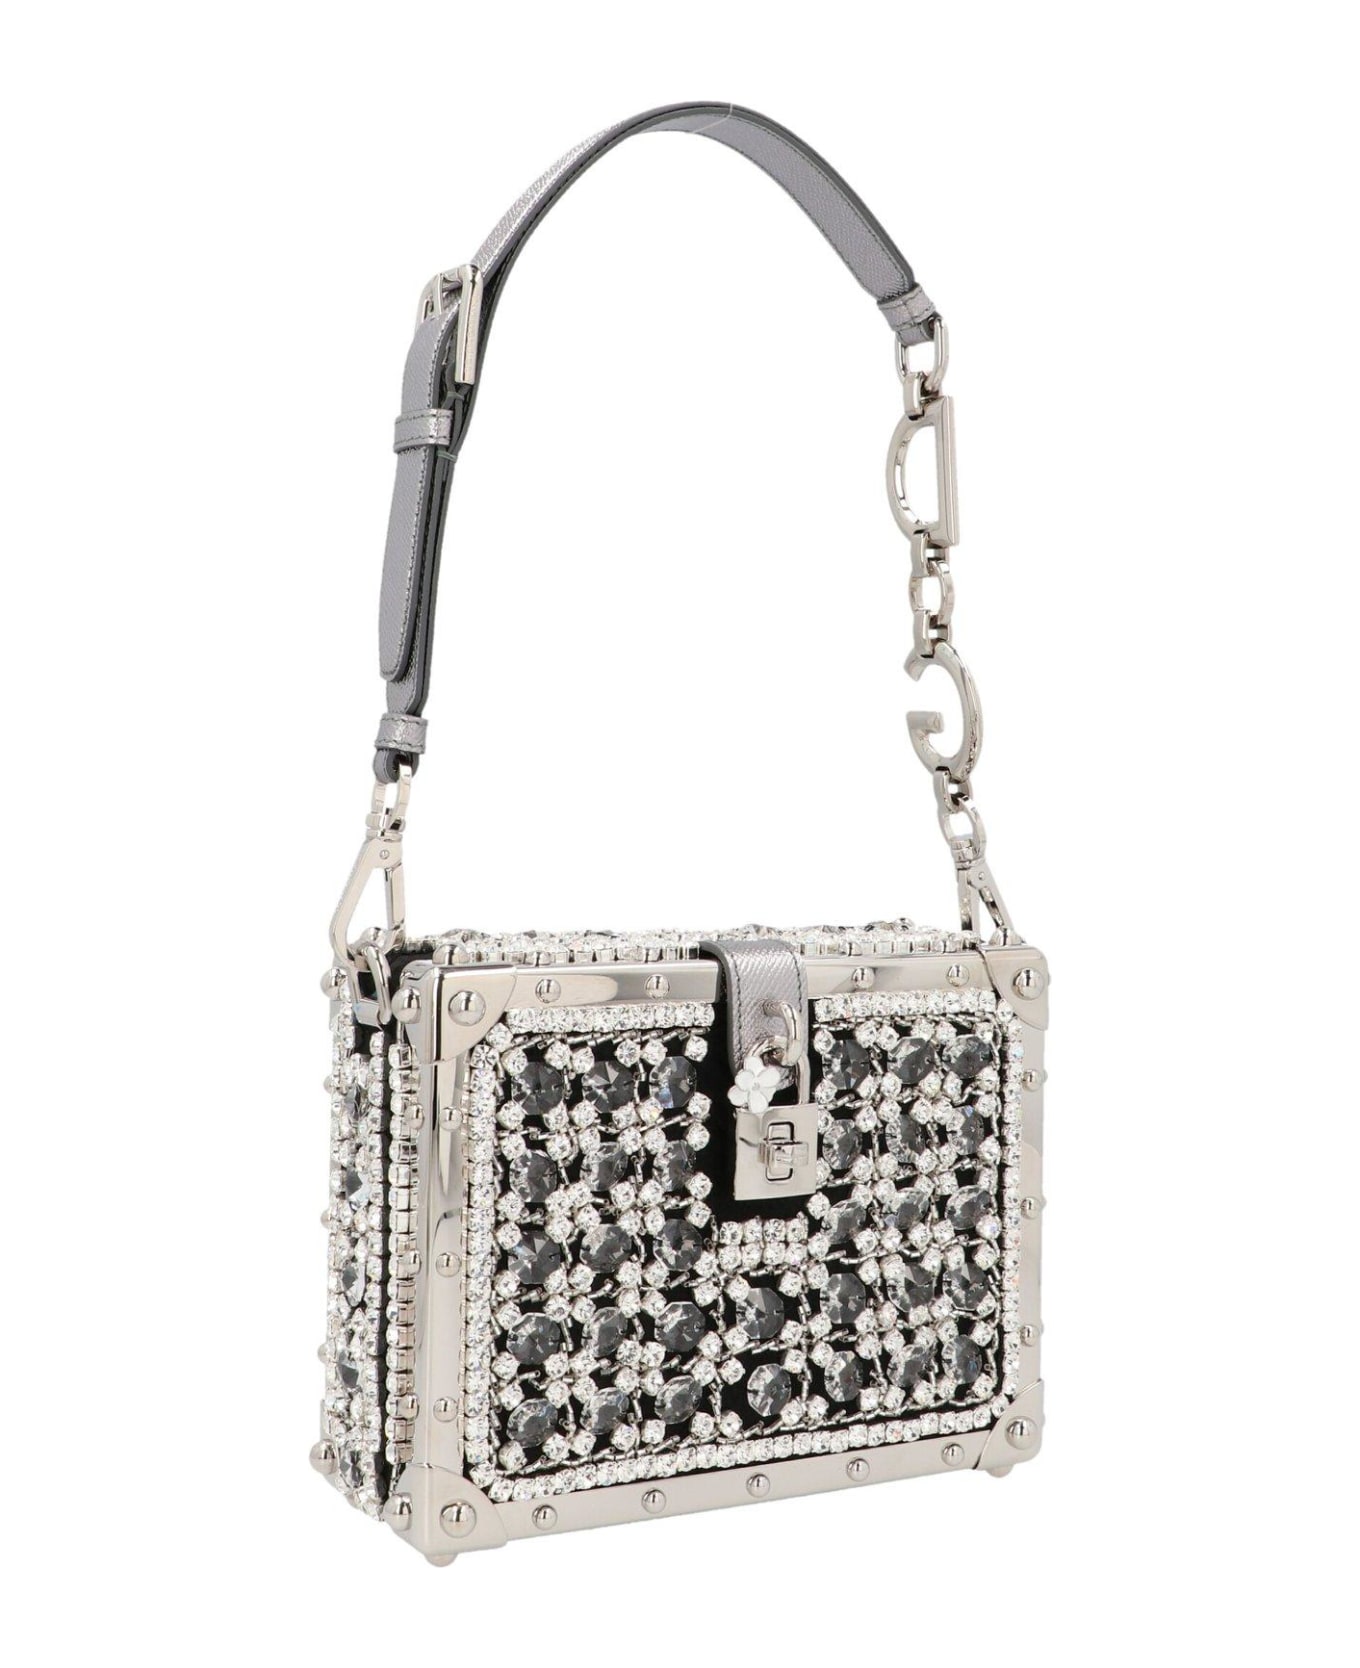 Dolce & Gabbana Embellished Tote Bag - Silver